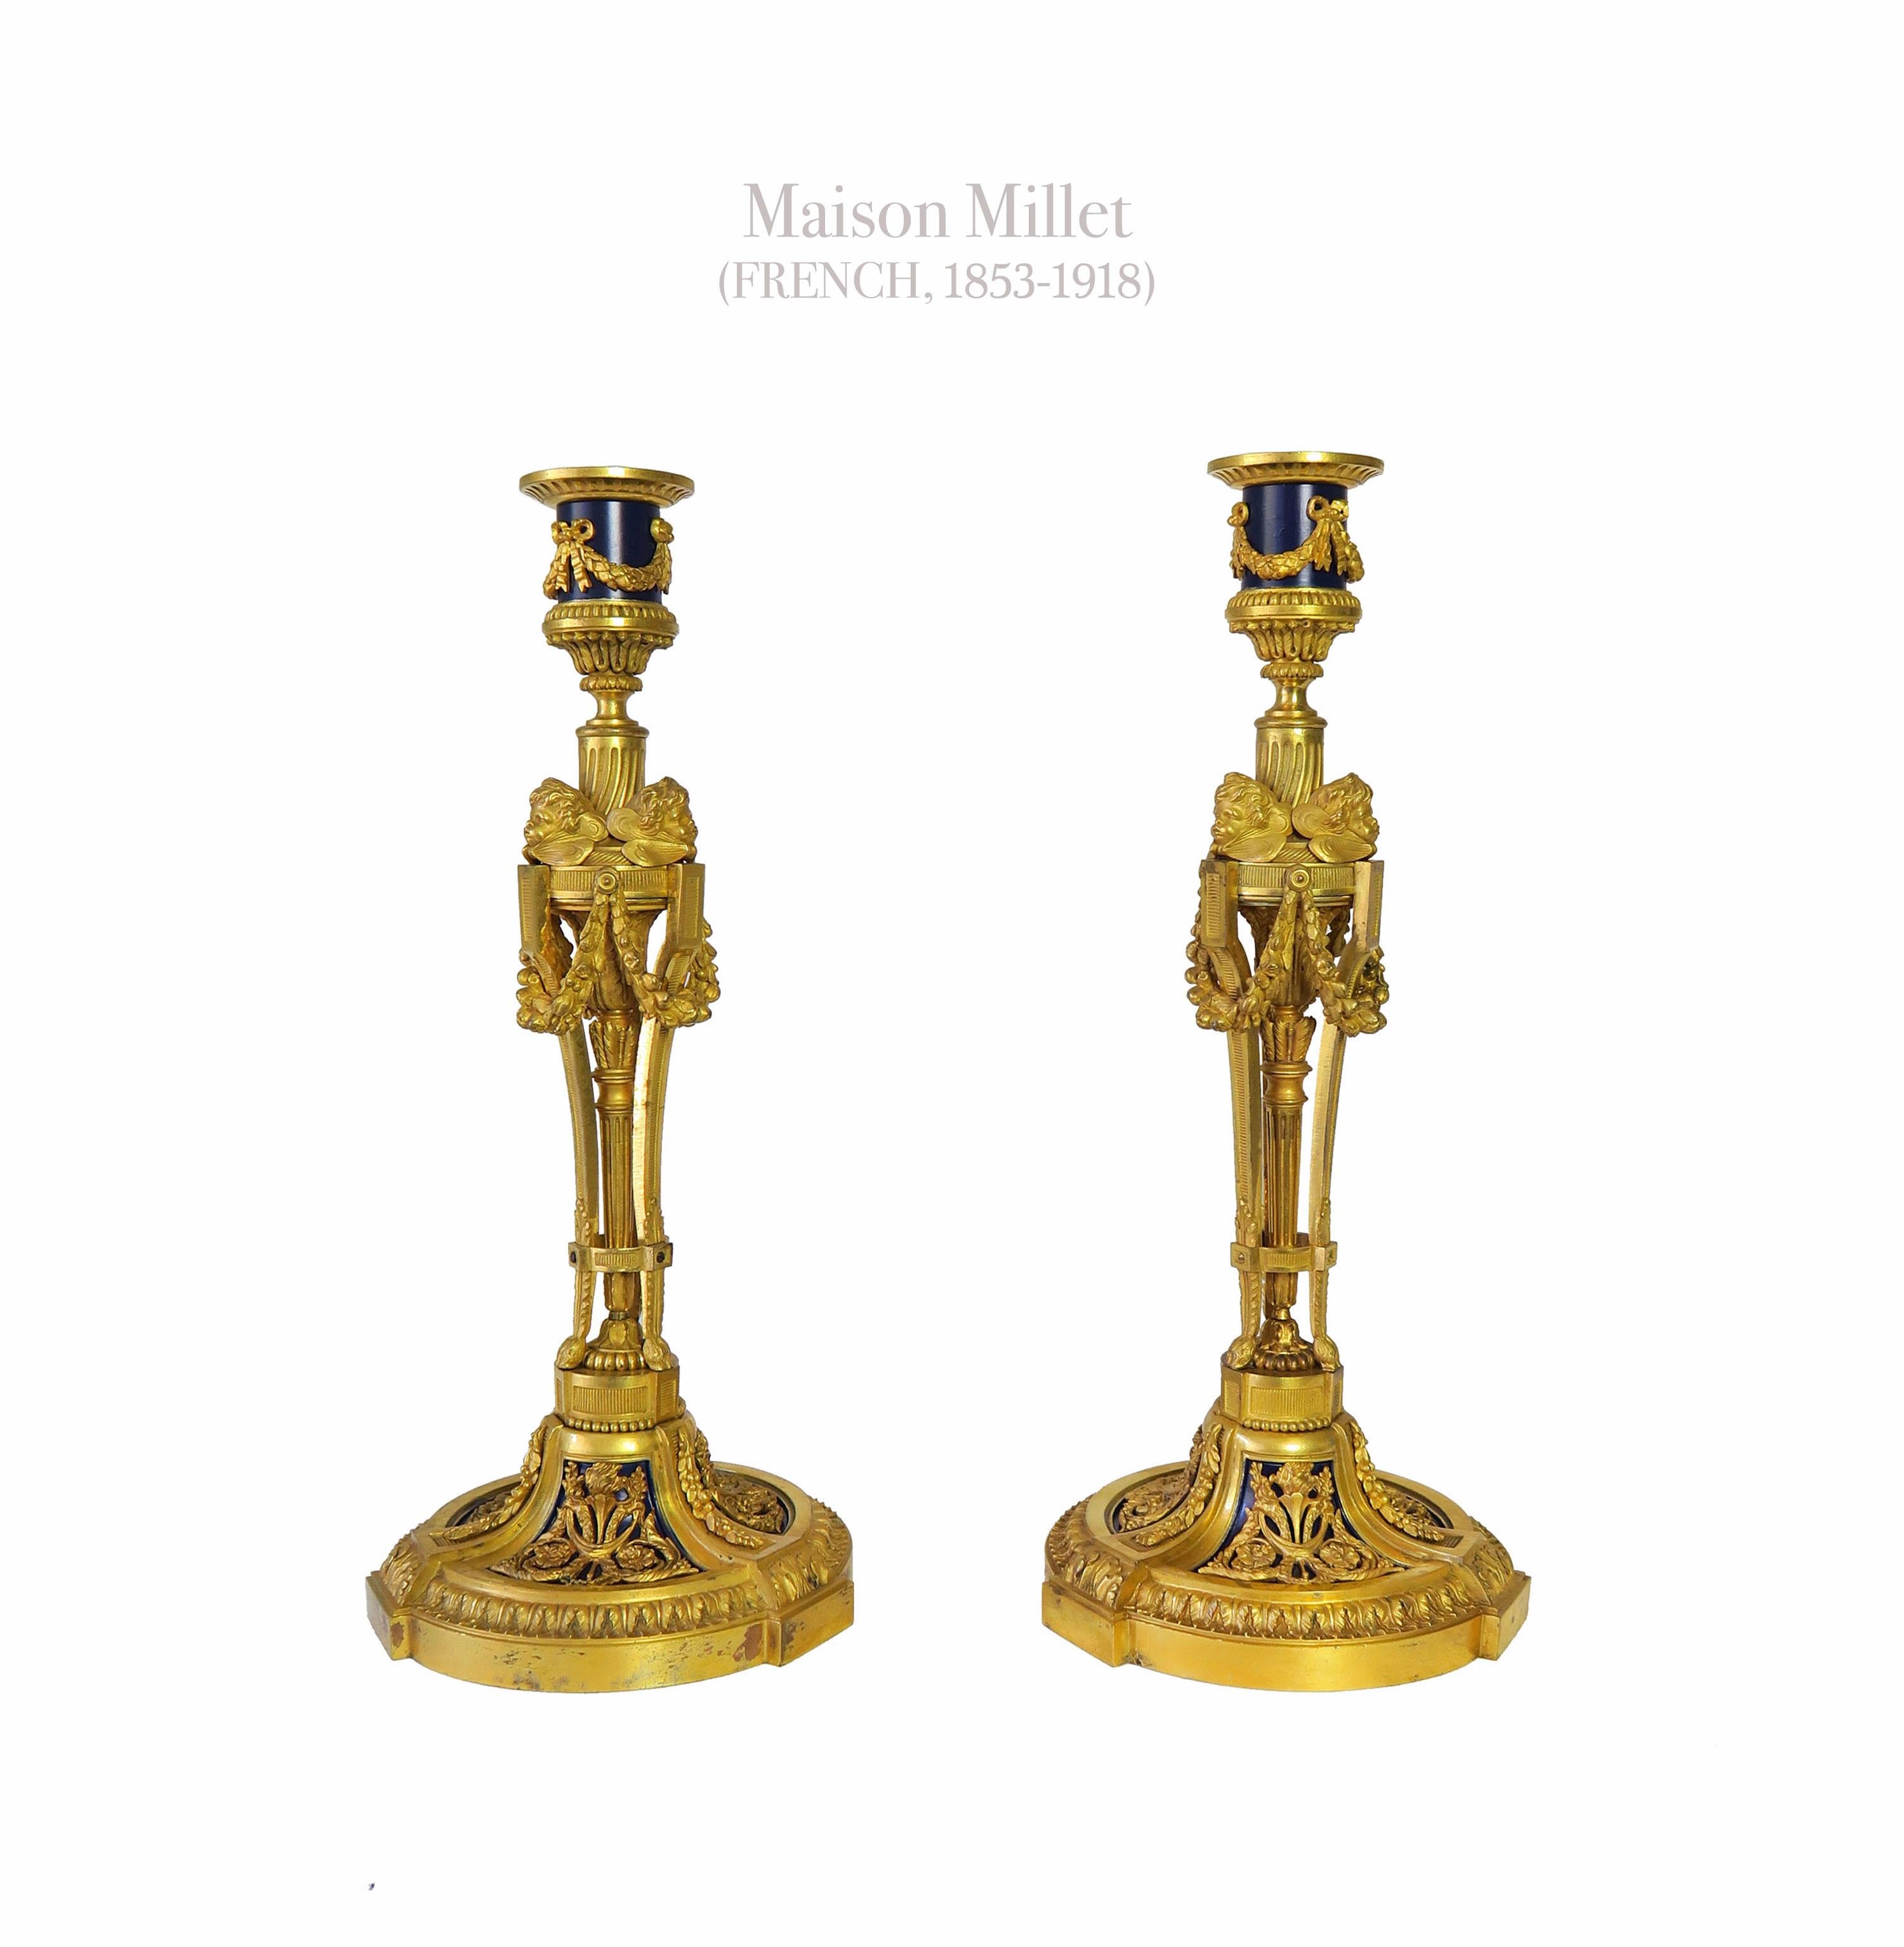 Paire de chandeliers en bronze doré d'après le modèle d'Etienne Martincourt par la Maison Millet.

Chacune d'elles est dotée d'un bec en forme de hotte et d'une tige tripartite avec des têtes de chérubins ailés reliées par des colonnes.
30,5 cm